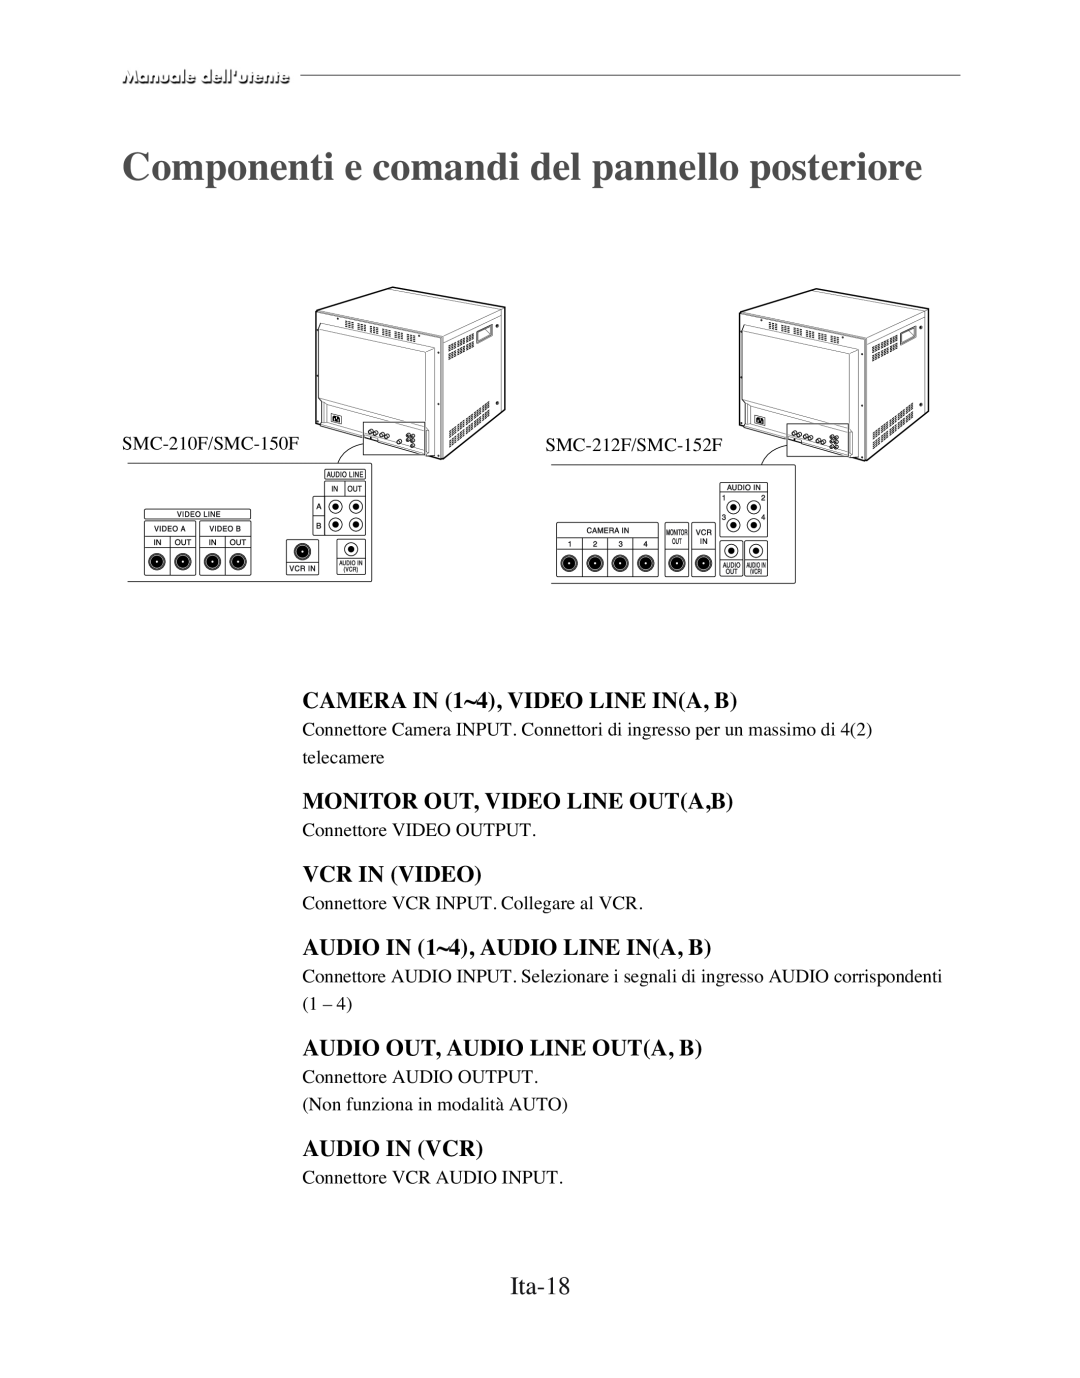 Samsung SMC-150FP Componenti e comandi del pannello posteriore, Ita-18, CAMERA IN 1~4, VIDEO LINE INA, B, Vcr In Video 